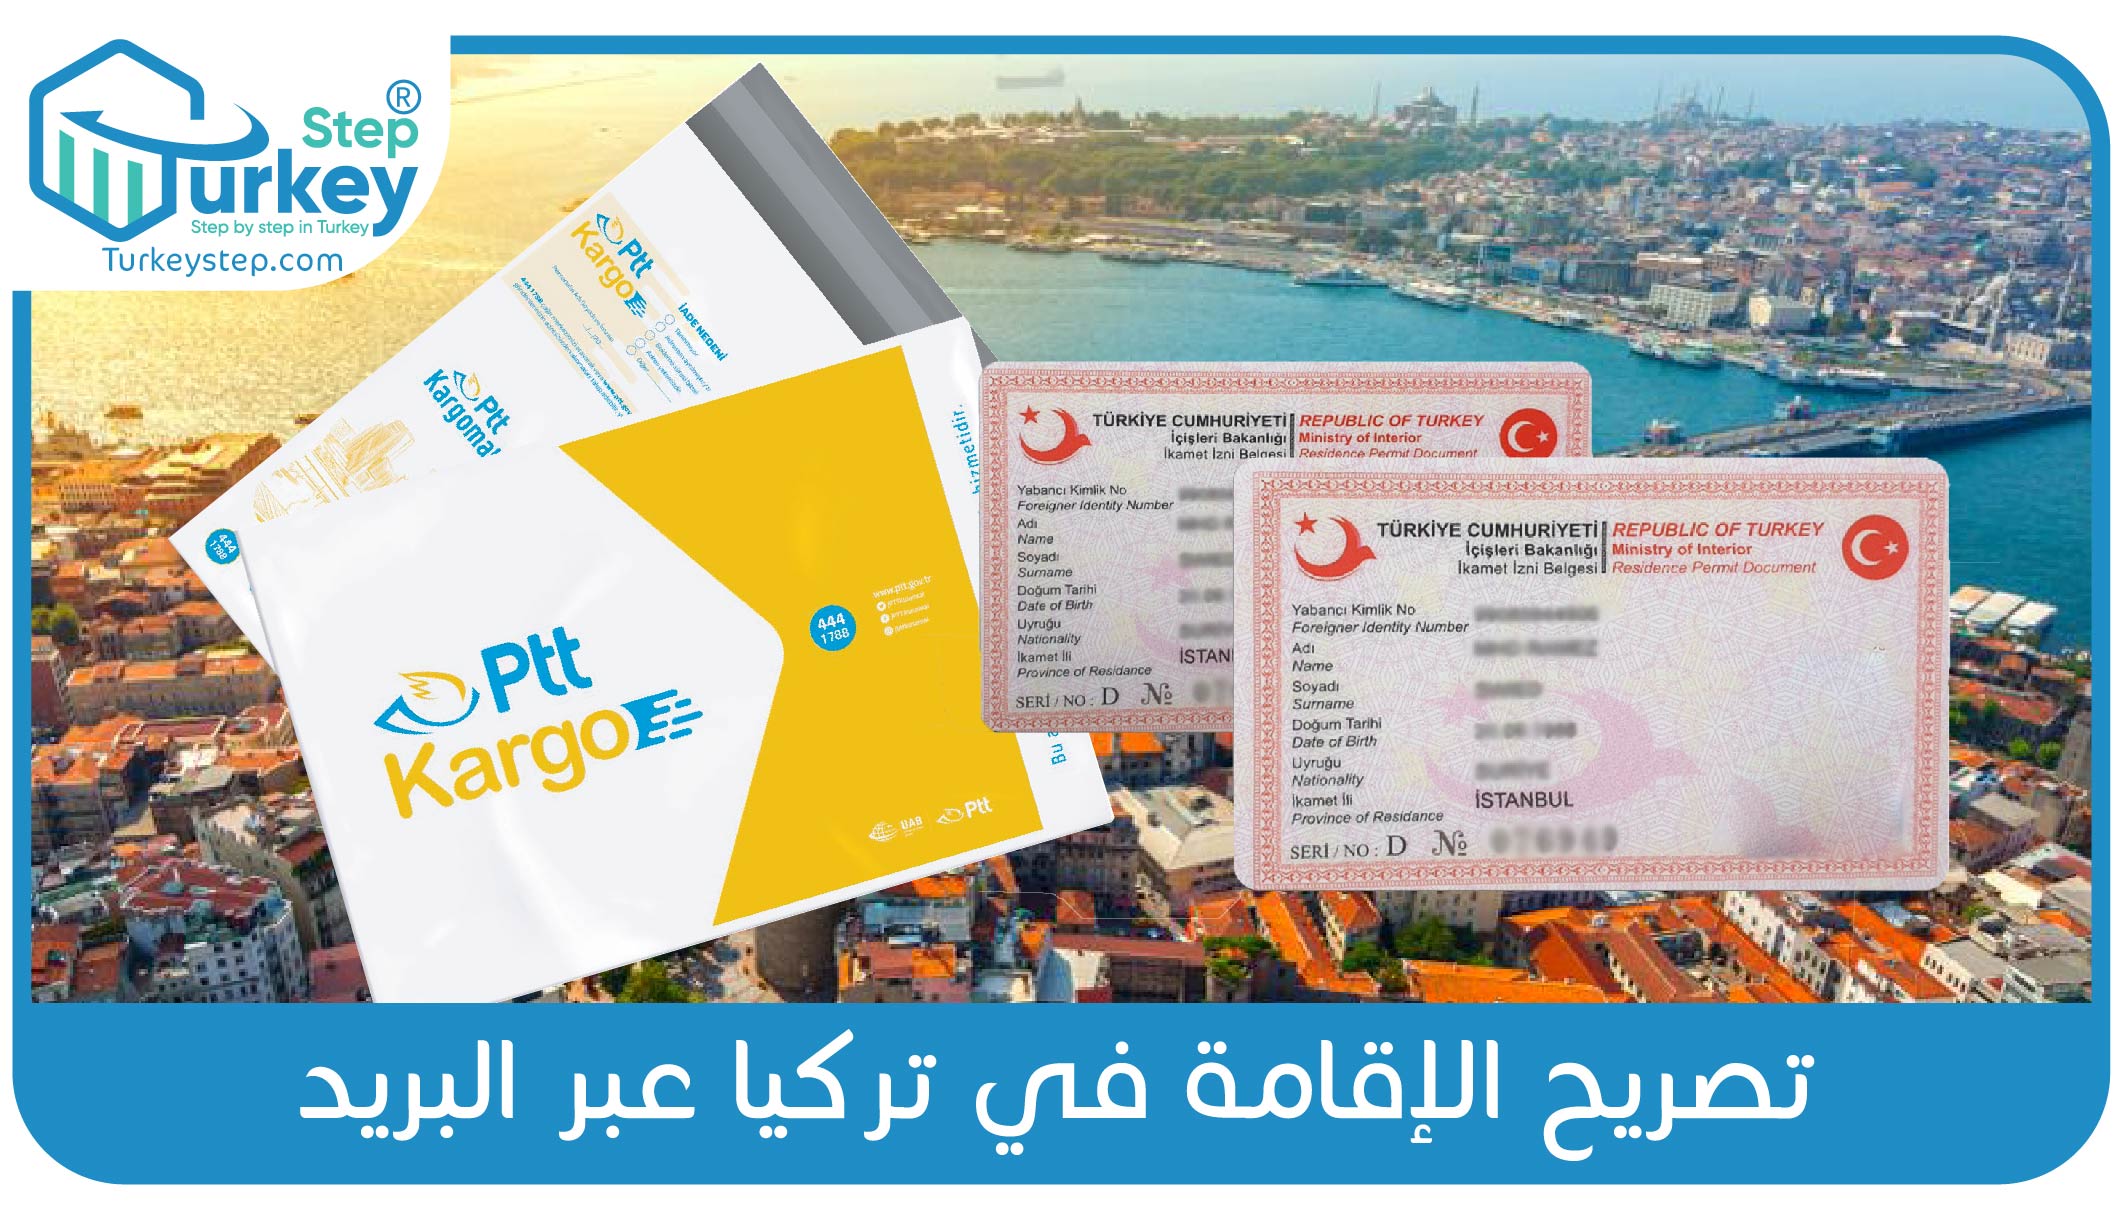 تصريح الإقامة في تركيا عبر البريد